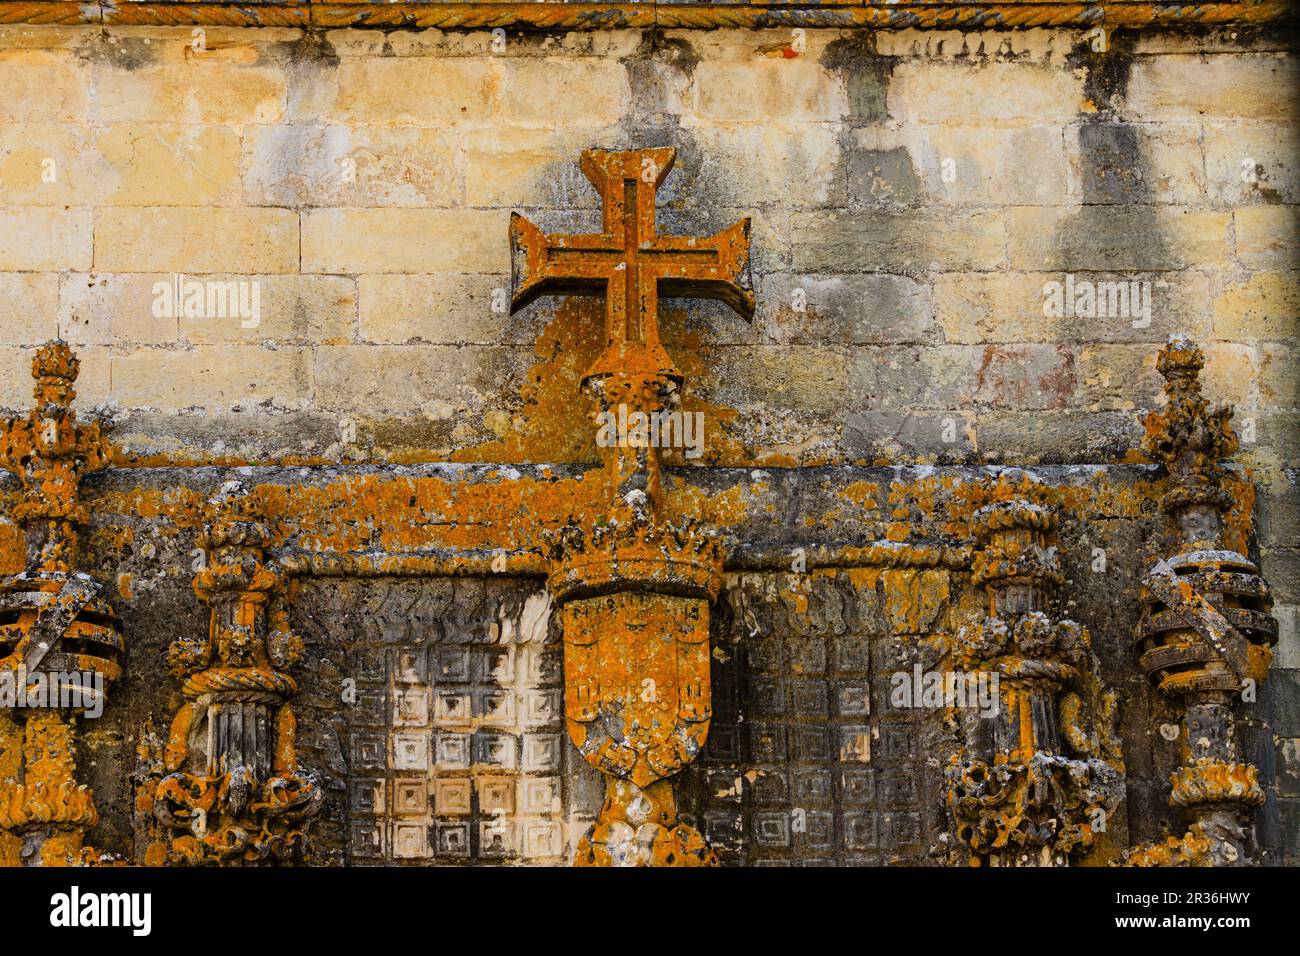 ventana del capitulo del convento de Cristo,diseñada por Diogo De Arruda,siglo XVI, Tomar, distrito de Santarem, Medio Tejo, region centro, Portugal, europa. Stock Photo